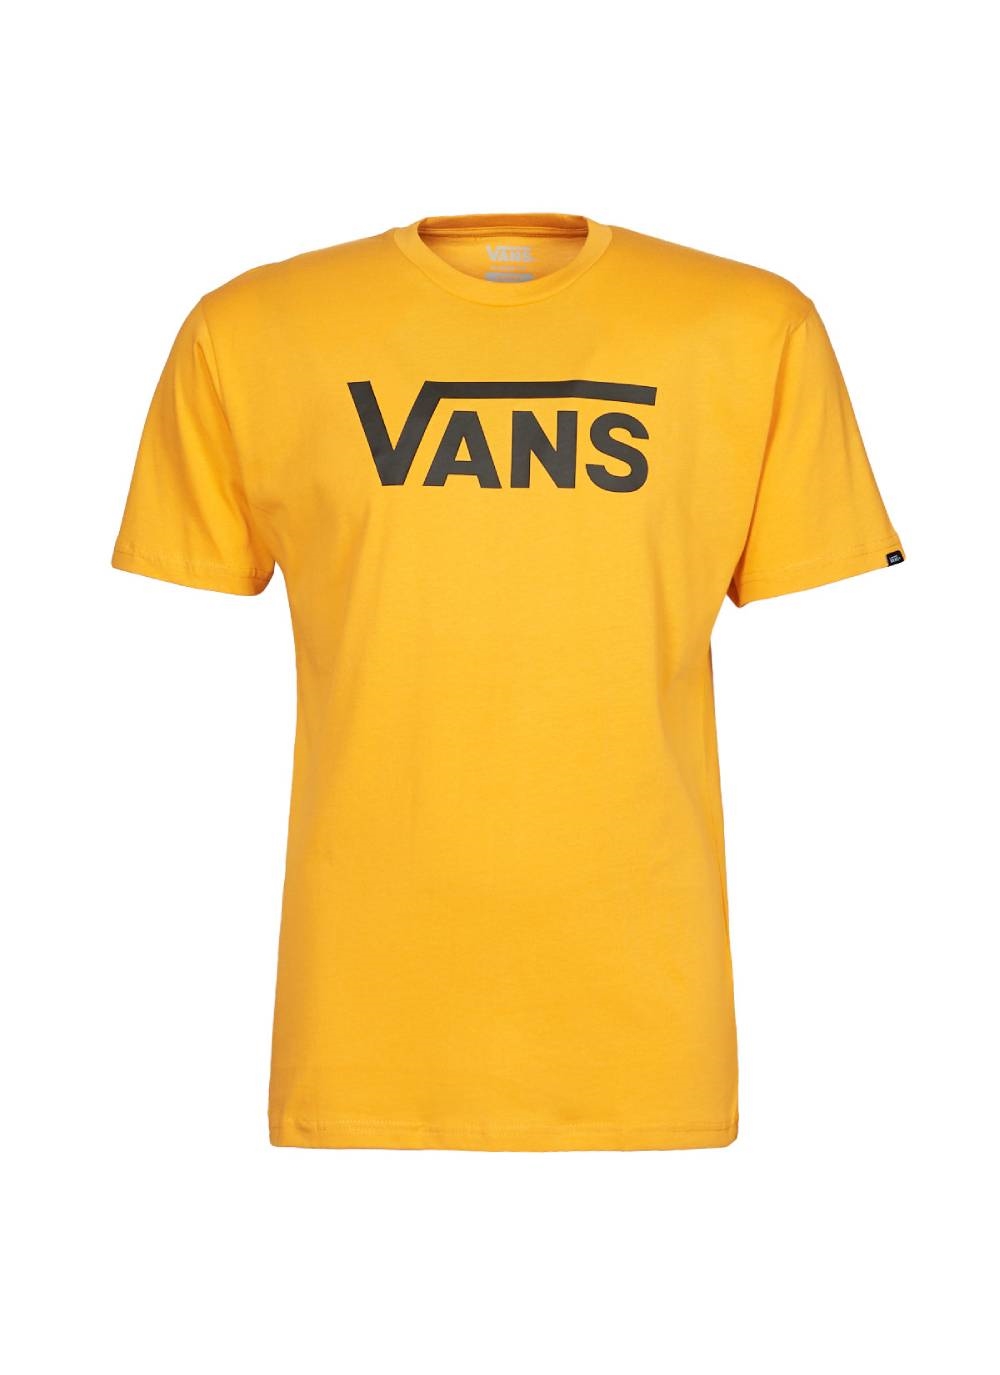 Vans Classic T-Shirt på undergroundshop.dk